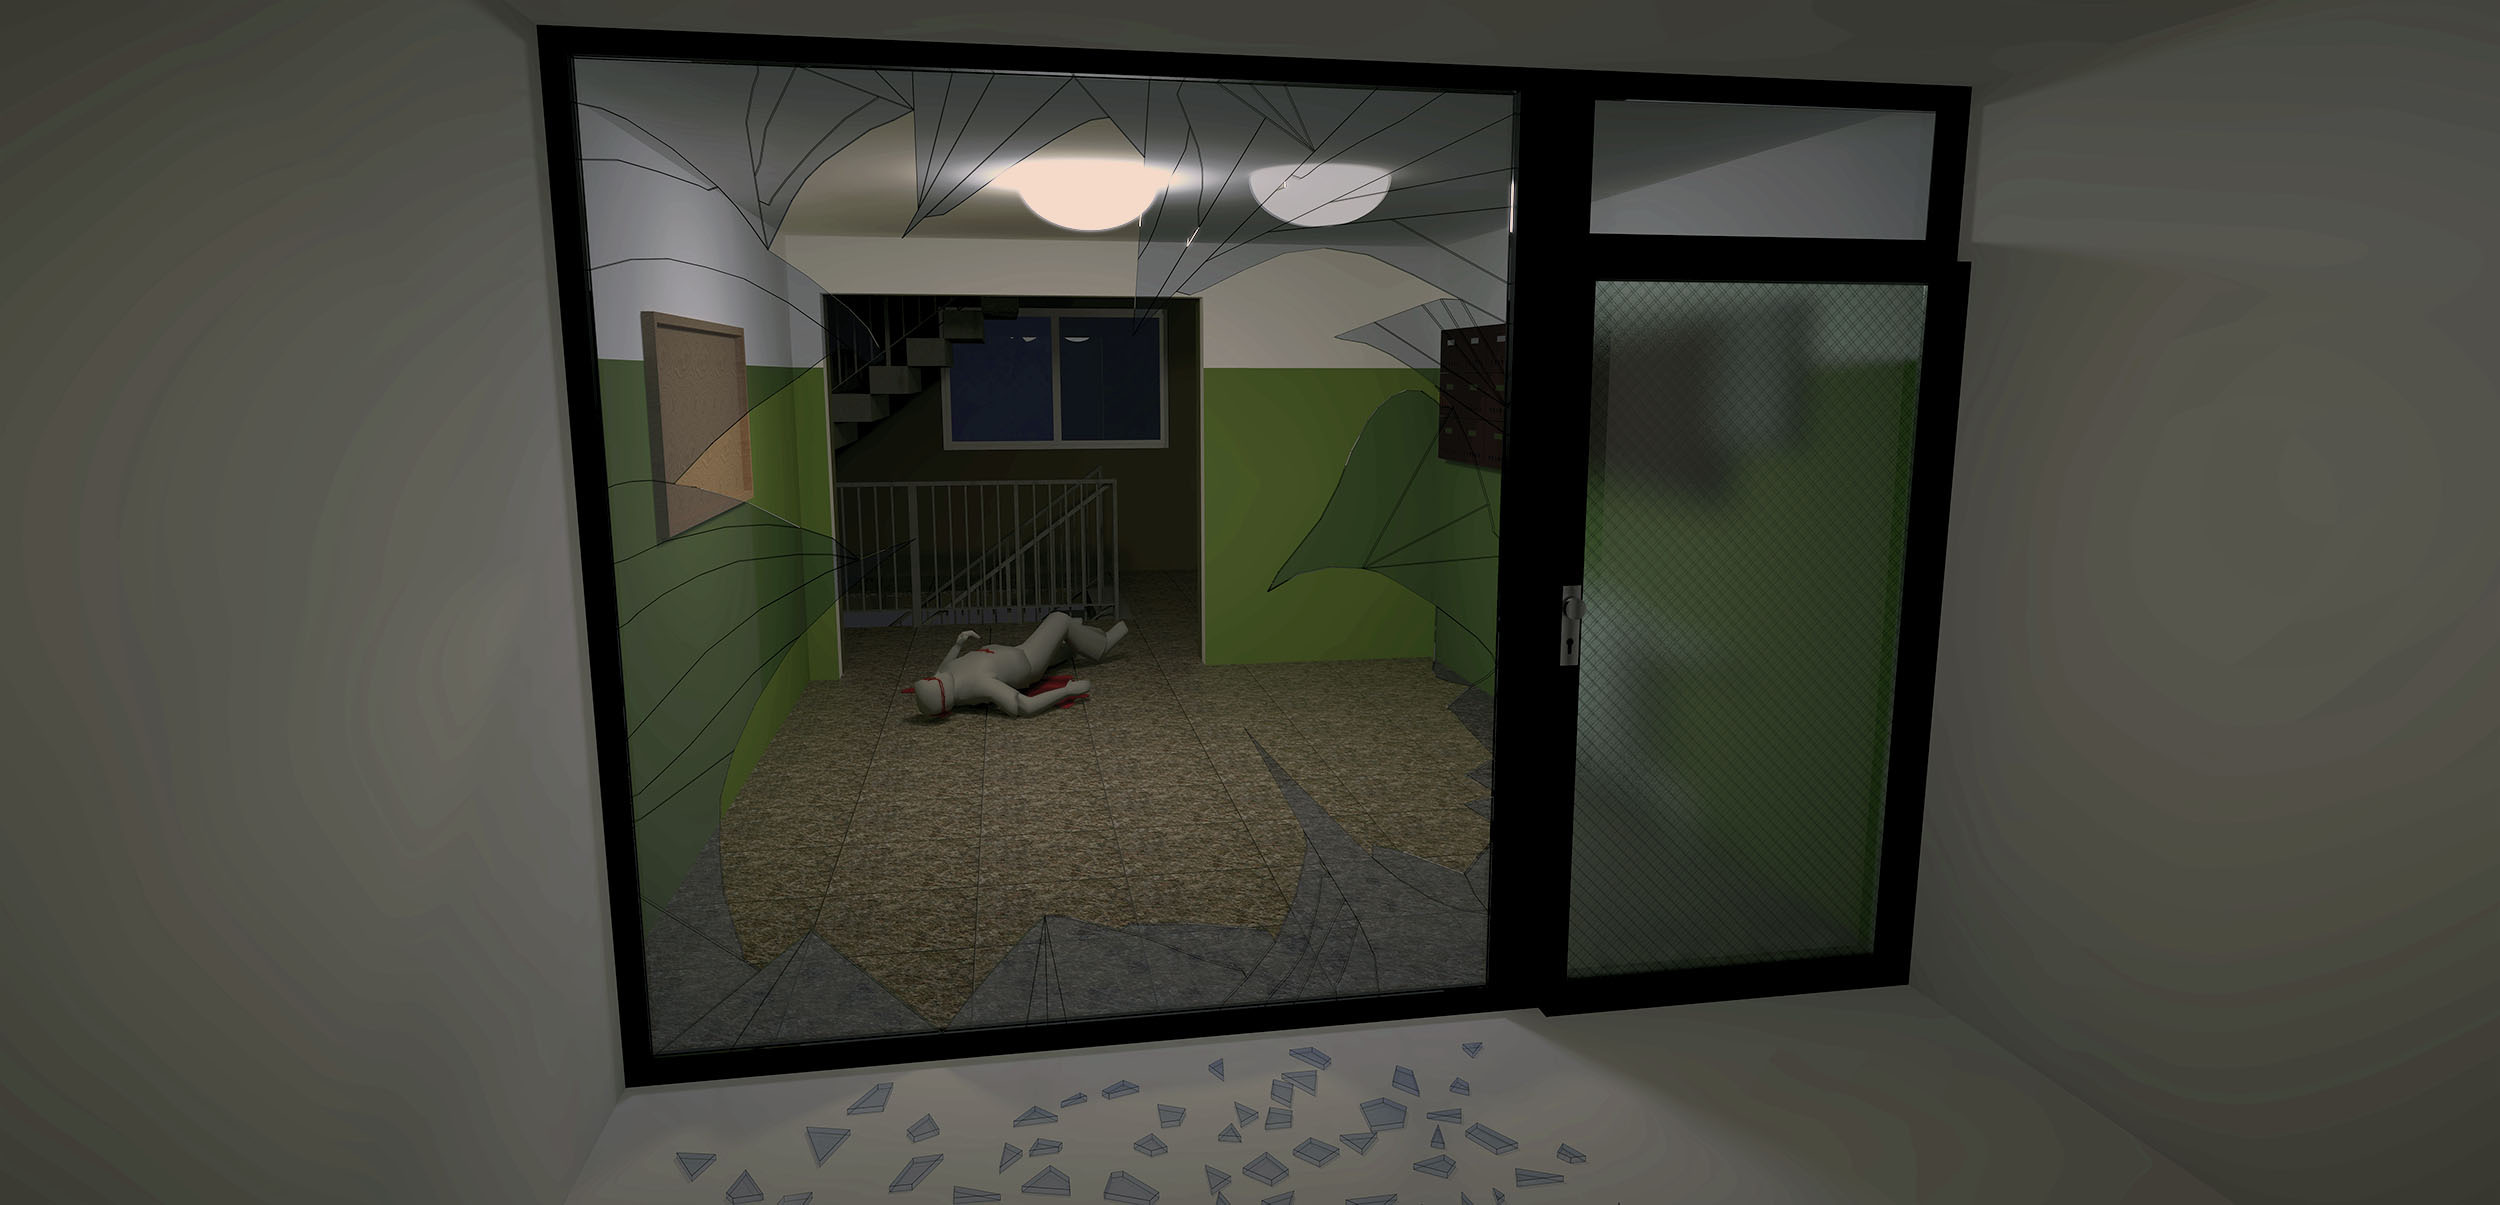 3D vizualizace vstupu do panelového domu na sídlišti Černý Most krátce po pokusu o vraždu. Pachatel rozbil sklo a utekl, Ivan Lhotský zůstal ležet na zemi v tratolišti krve.